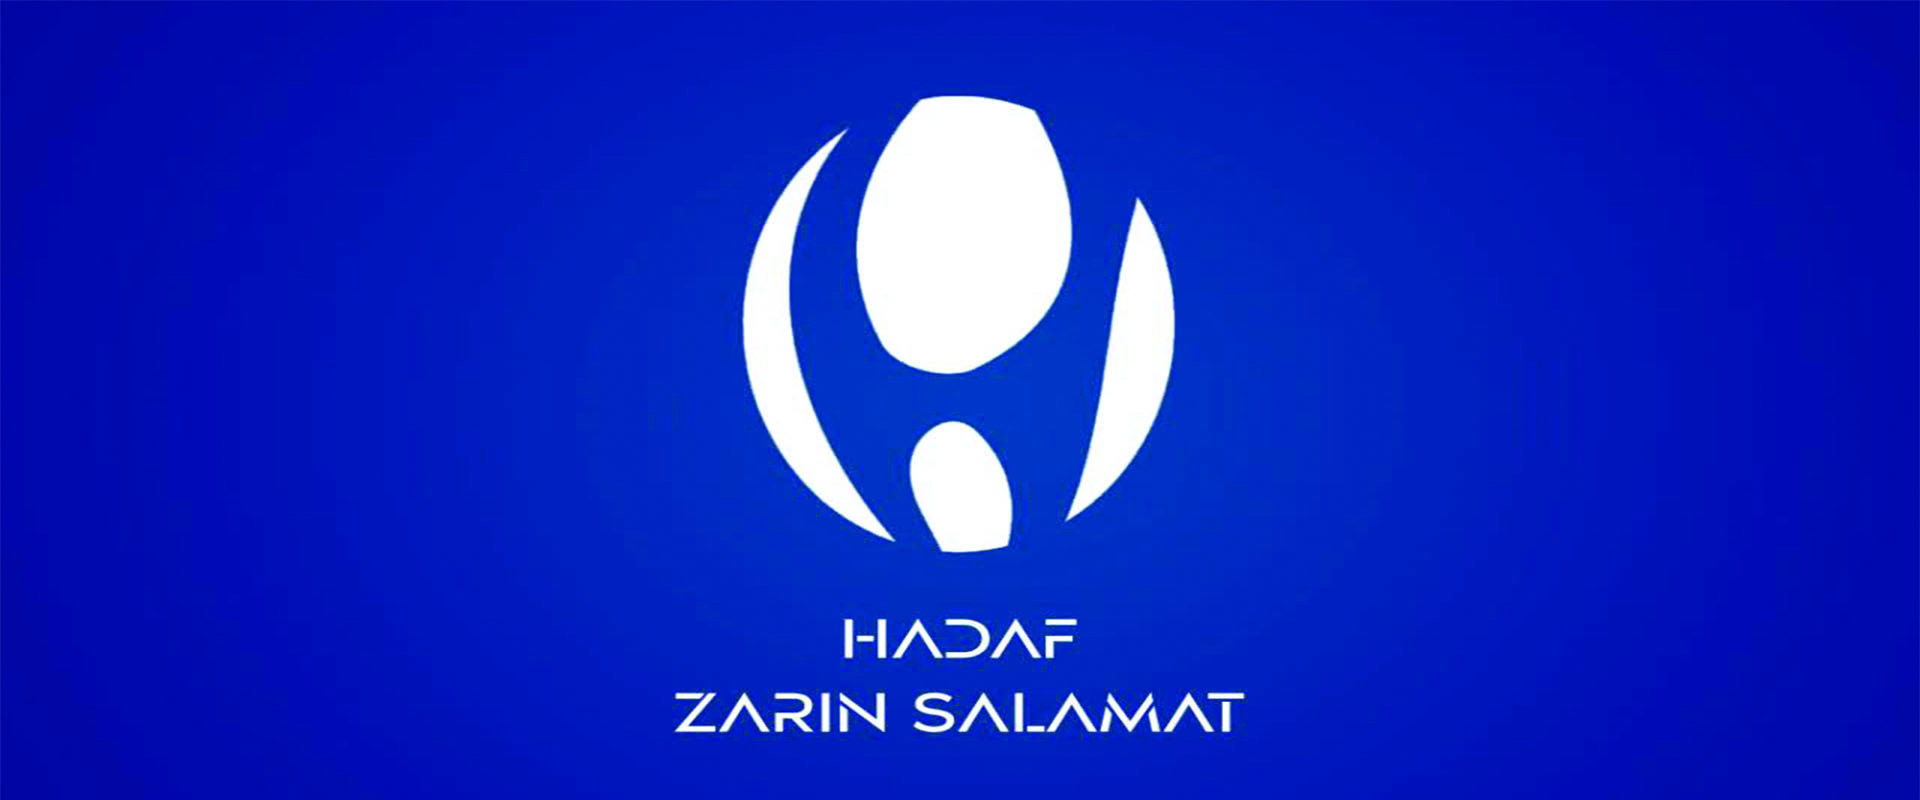 Hadaf Zarin